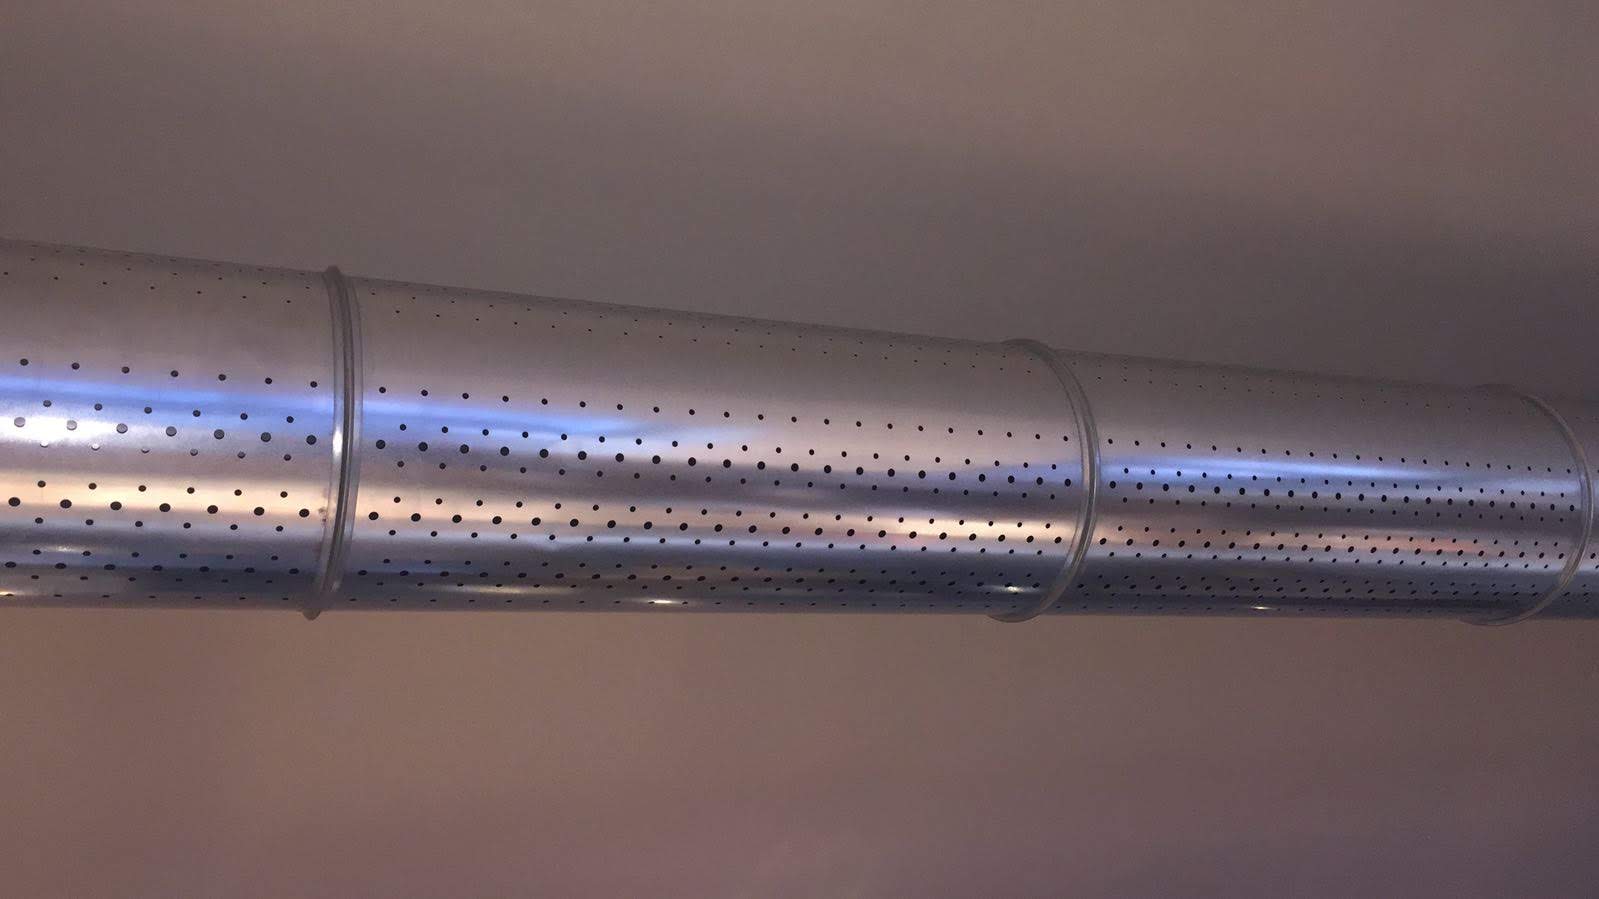 Condotta microforata a sezione circolare in acciaio zincato diametro 200 mm spessore 6/10 lunghezza 1480 mm